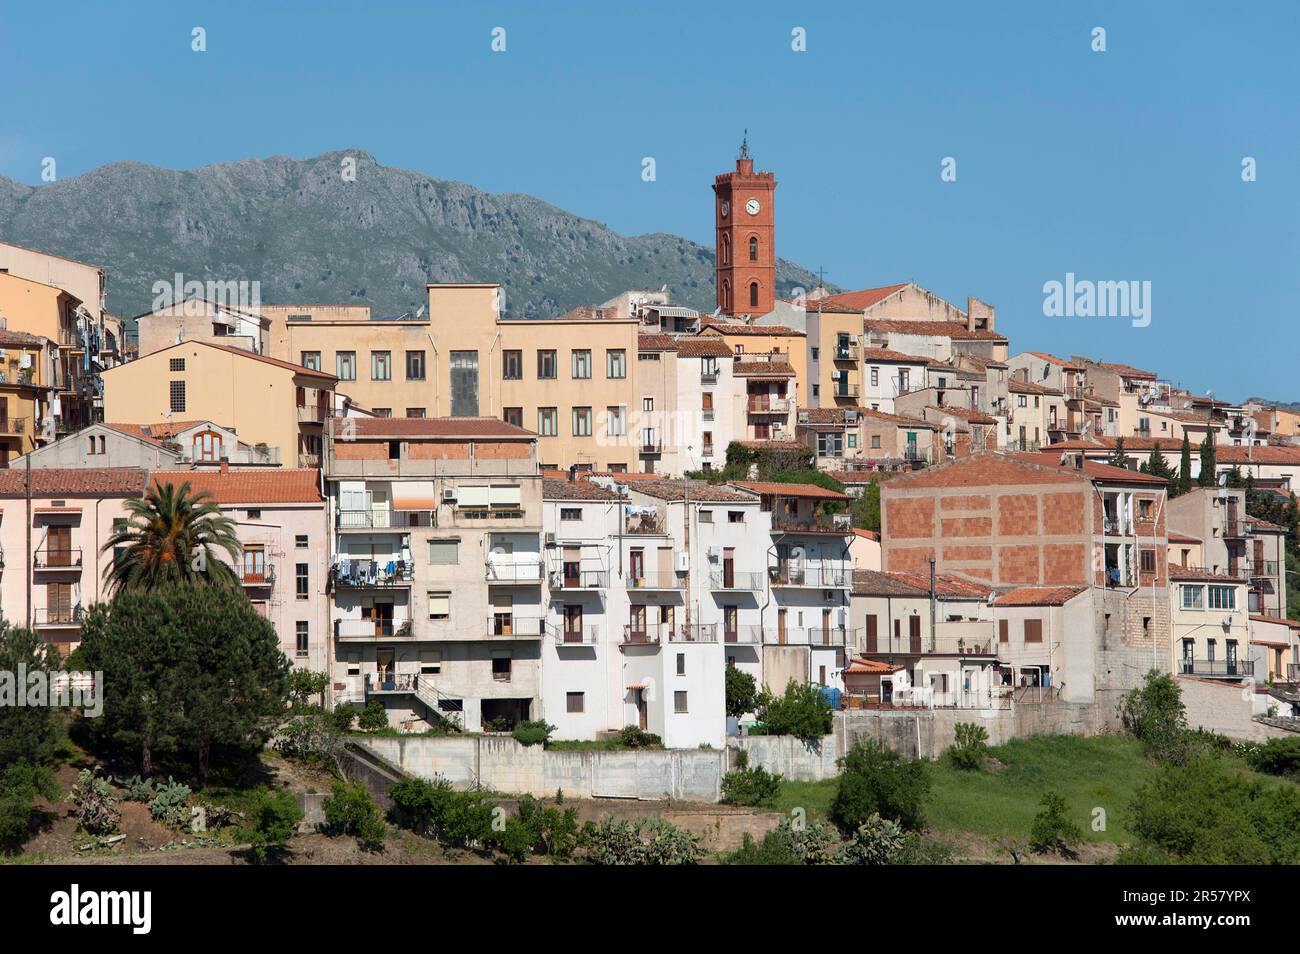 Castelbuono, Sicily, Italy Stock Photo